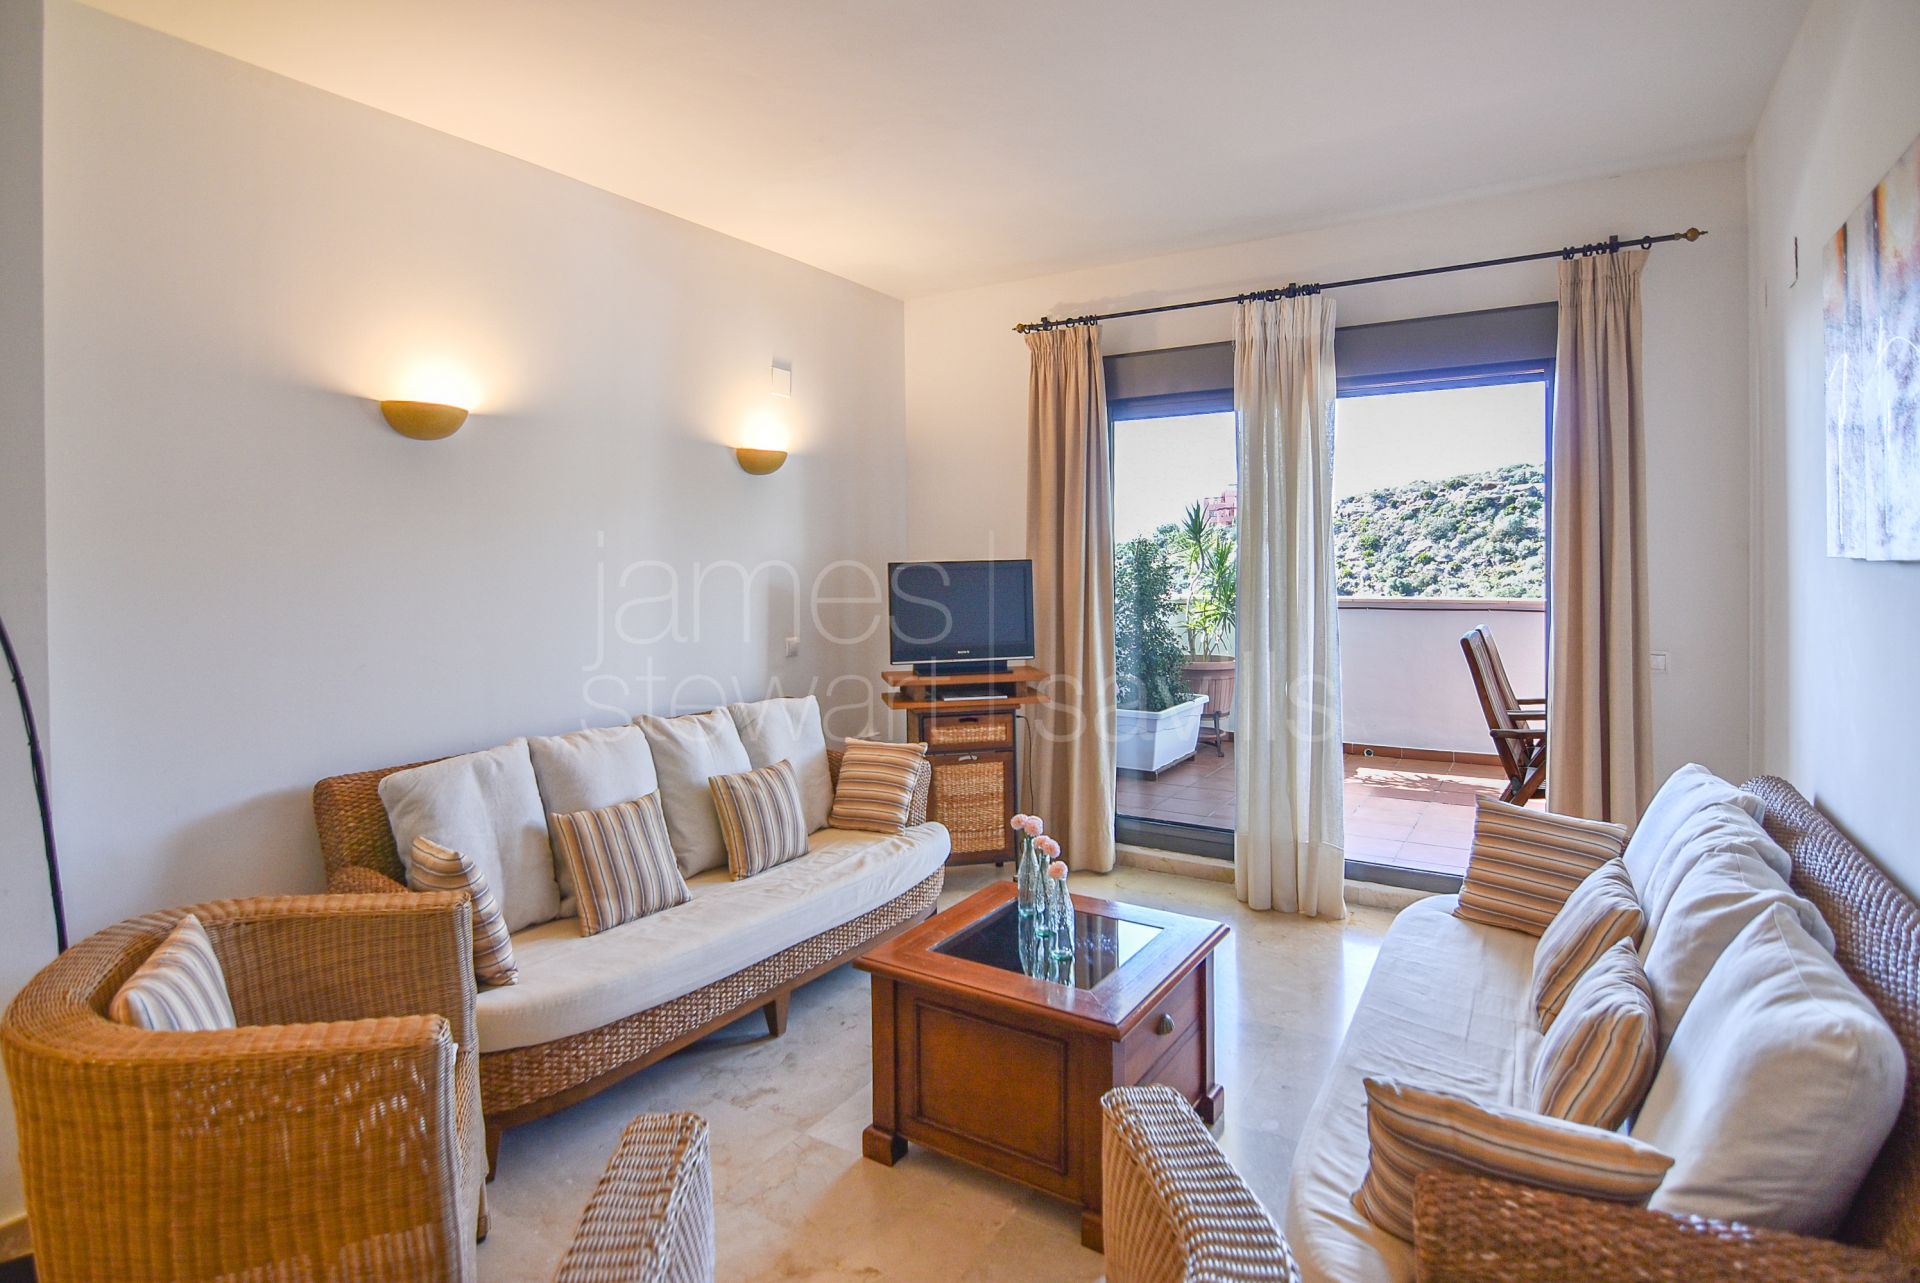 Cosy 2-Bedroom Apartment with Stunning Views in Bahía de las Rocas